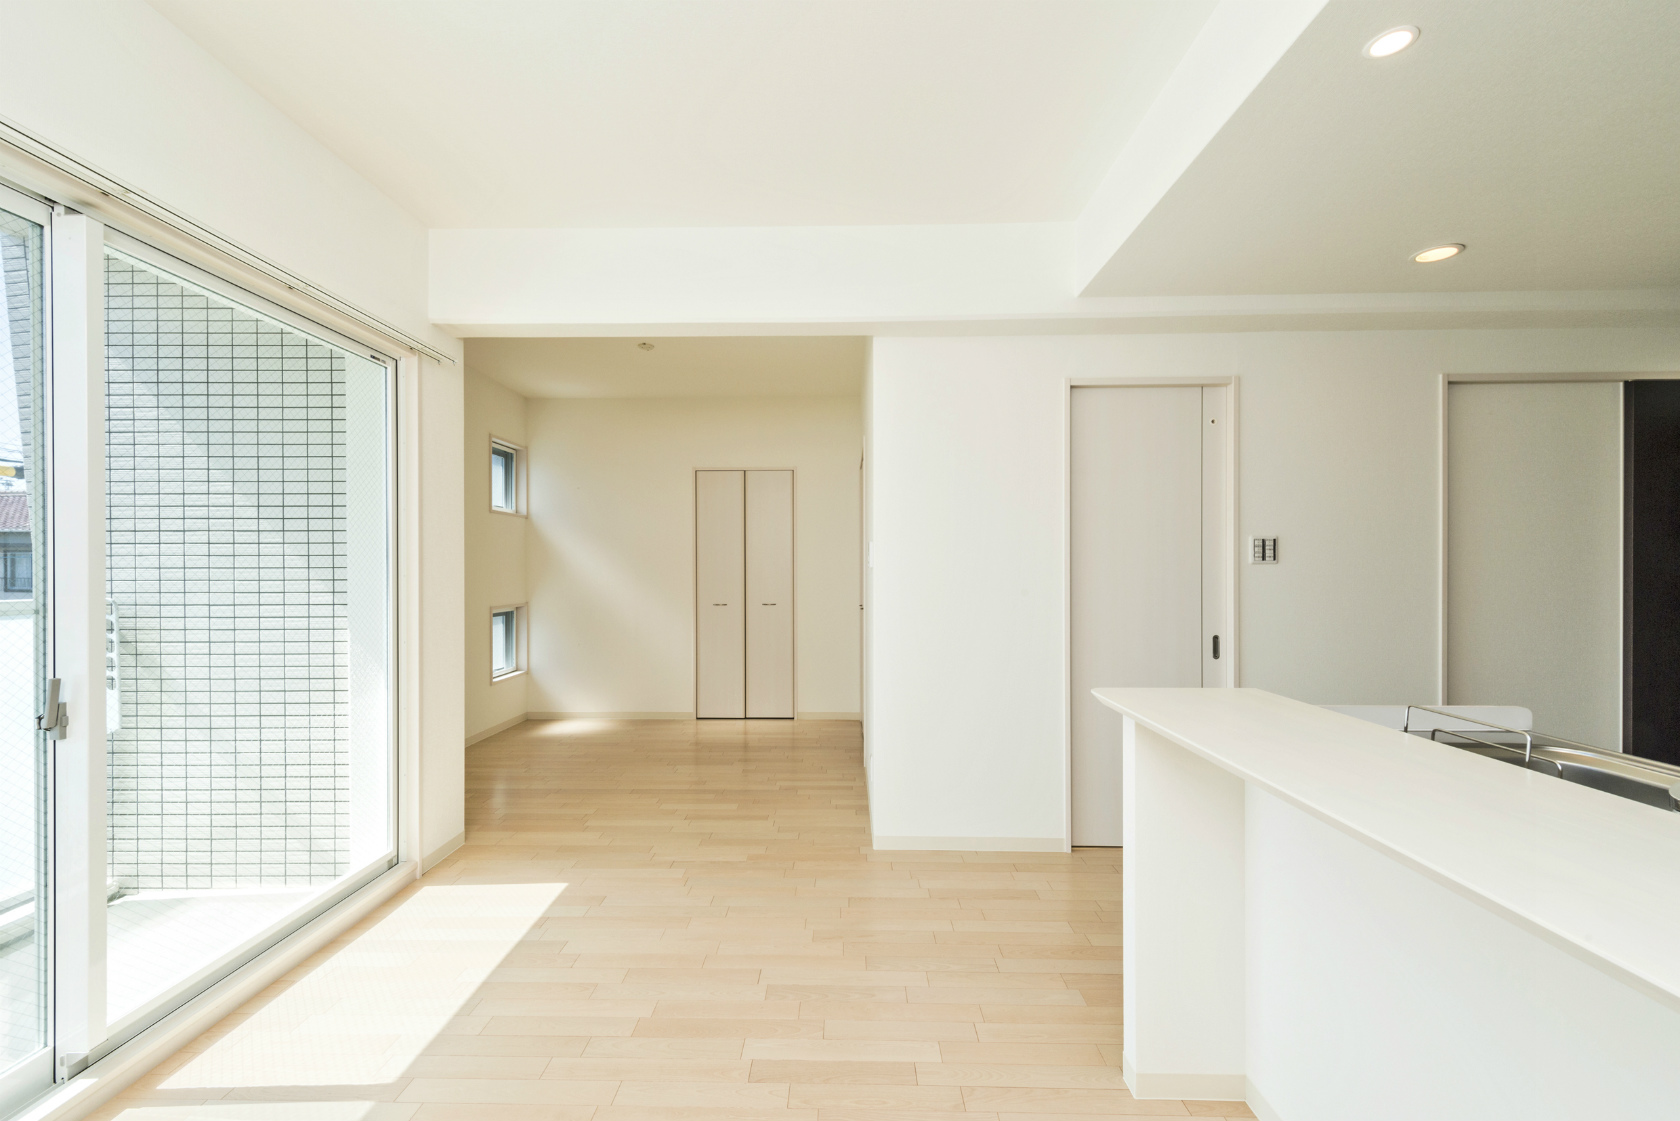 名古屋市西区の全室角部屋2階建て賃貸マンションの大きな窓の付いた明るいLDK